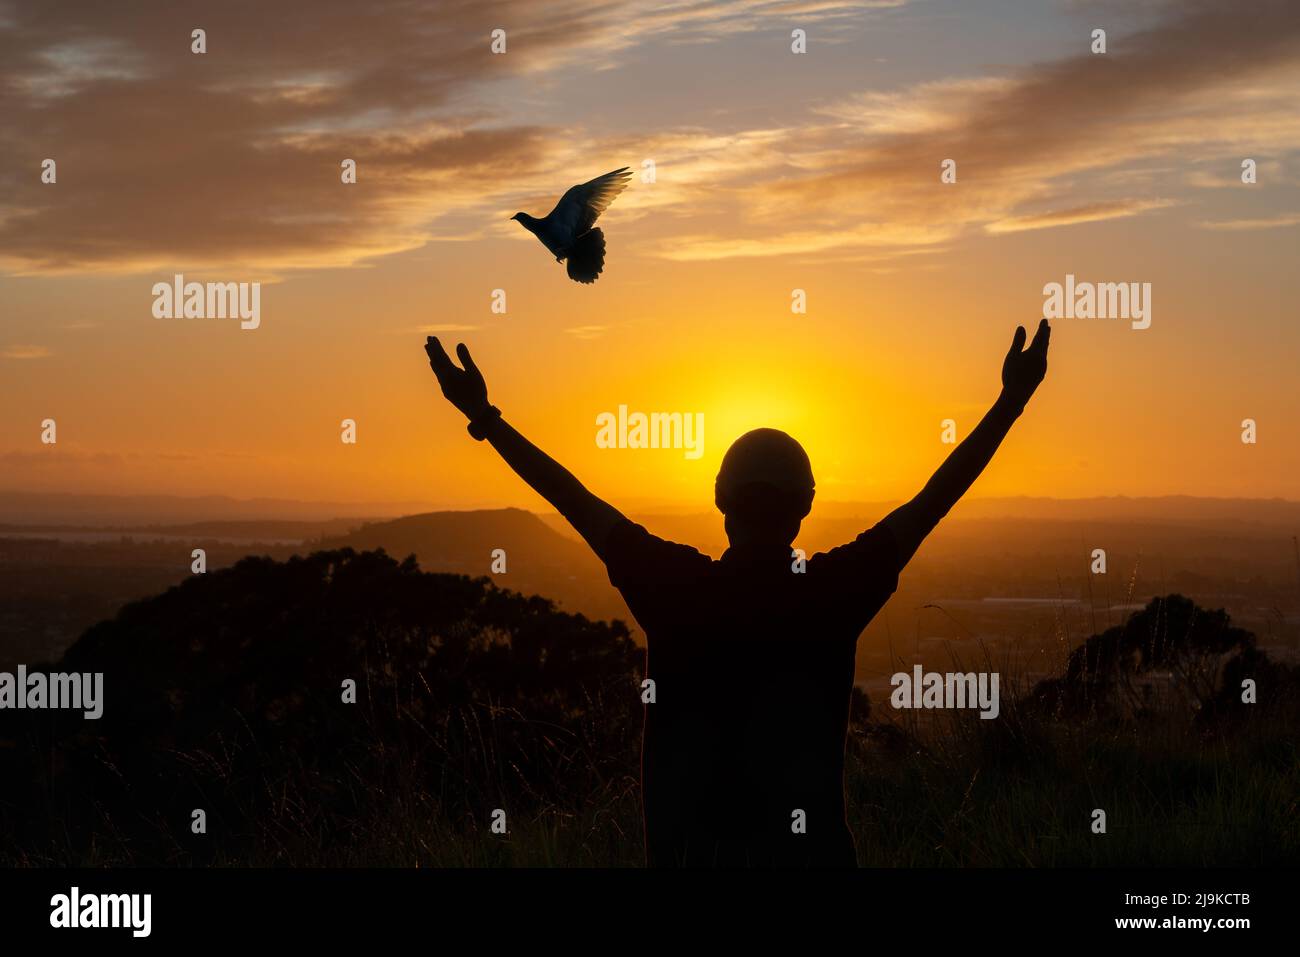 Silhouette d'un homme aux bras ouverts saluant le soleil, oiseau volant au lever du soleil. Concept d'espoir. Banque D'Images